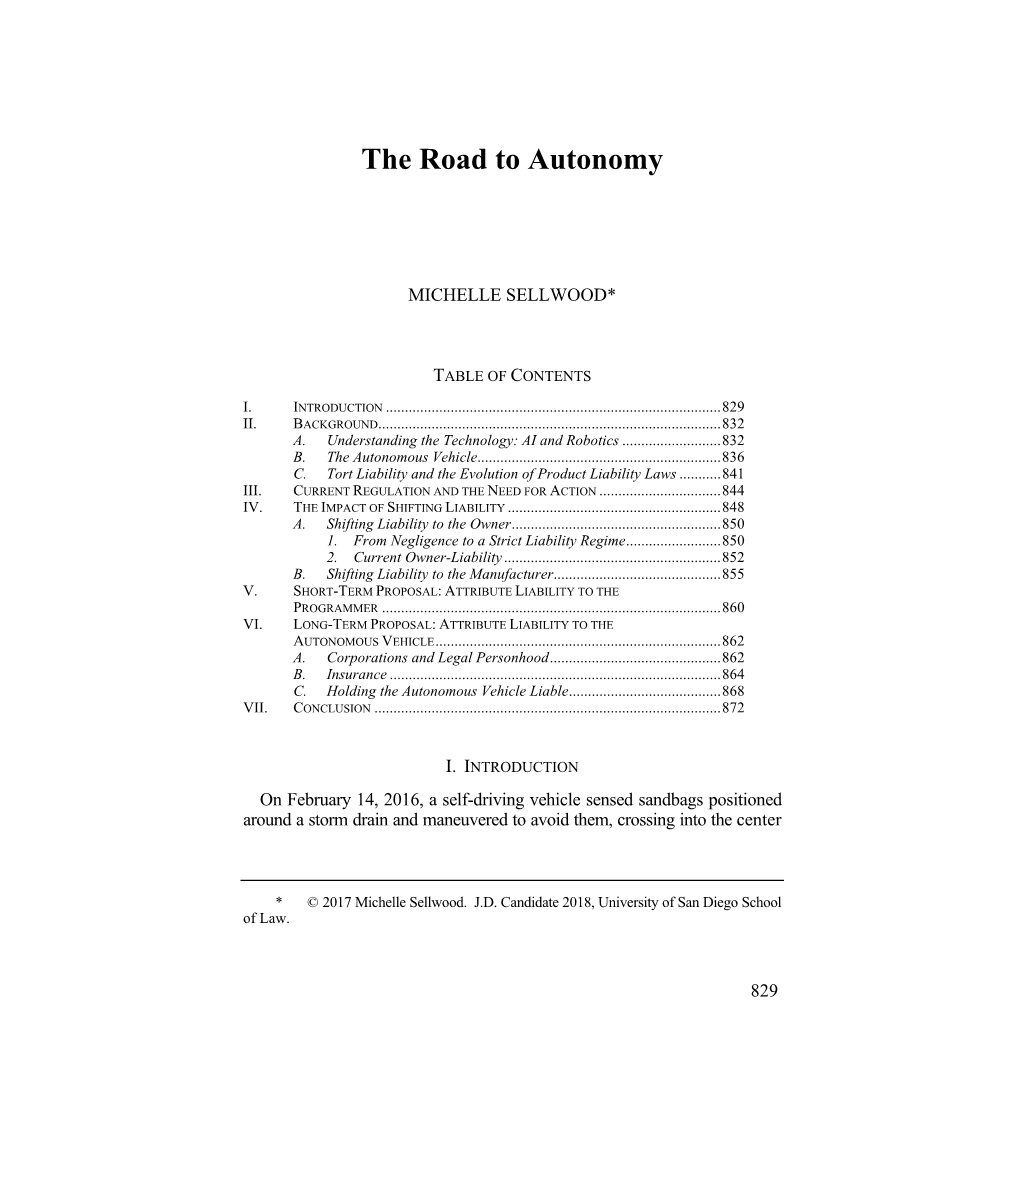 The Road to Autonomy